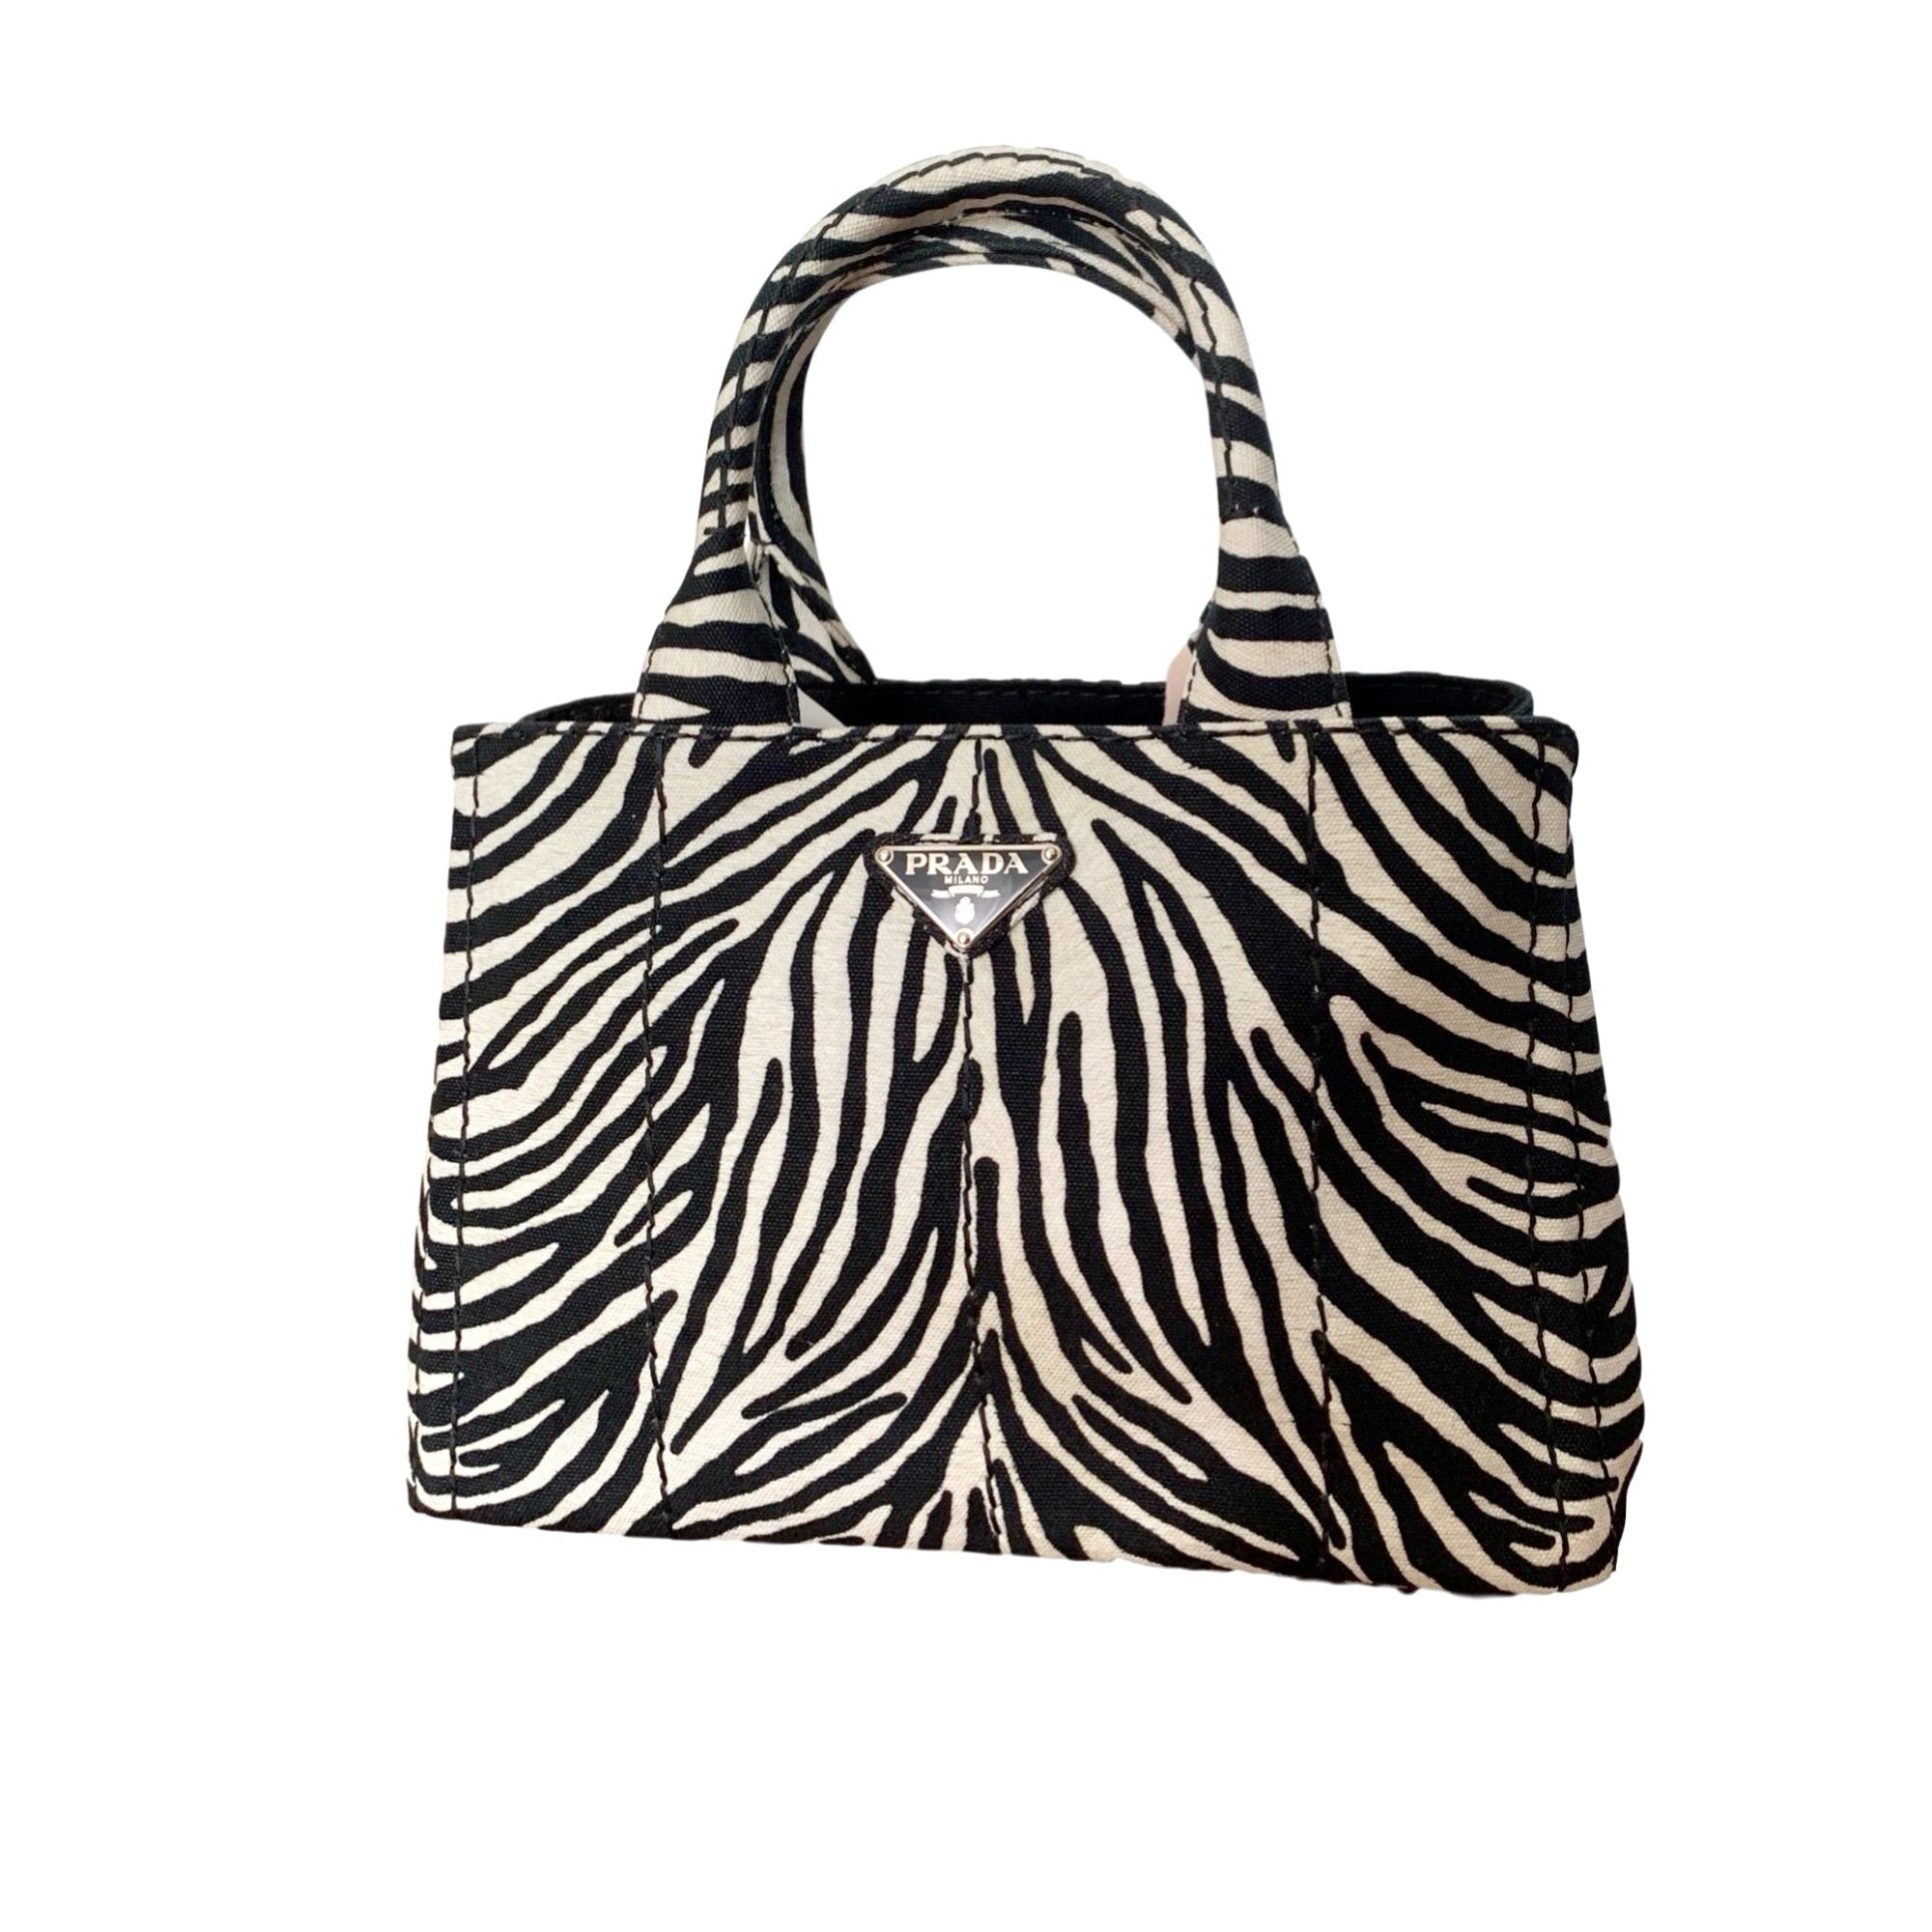 Prada Zebra Canvas Tote - Handbags